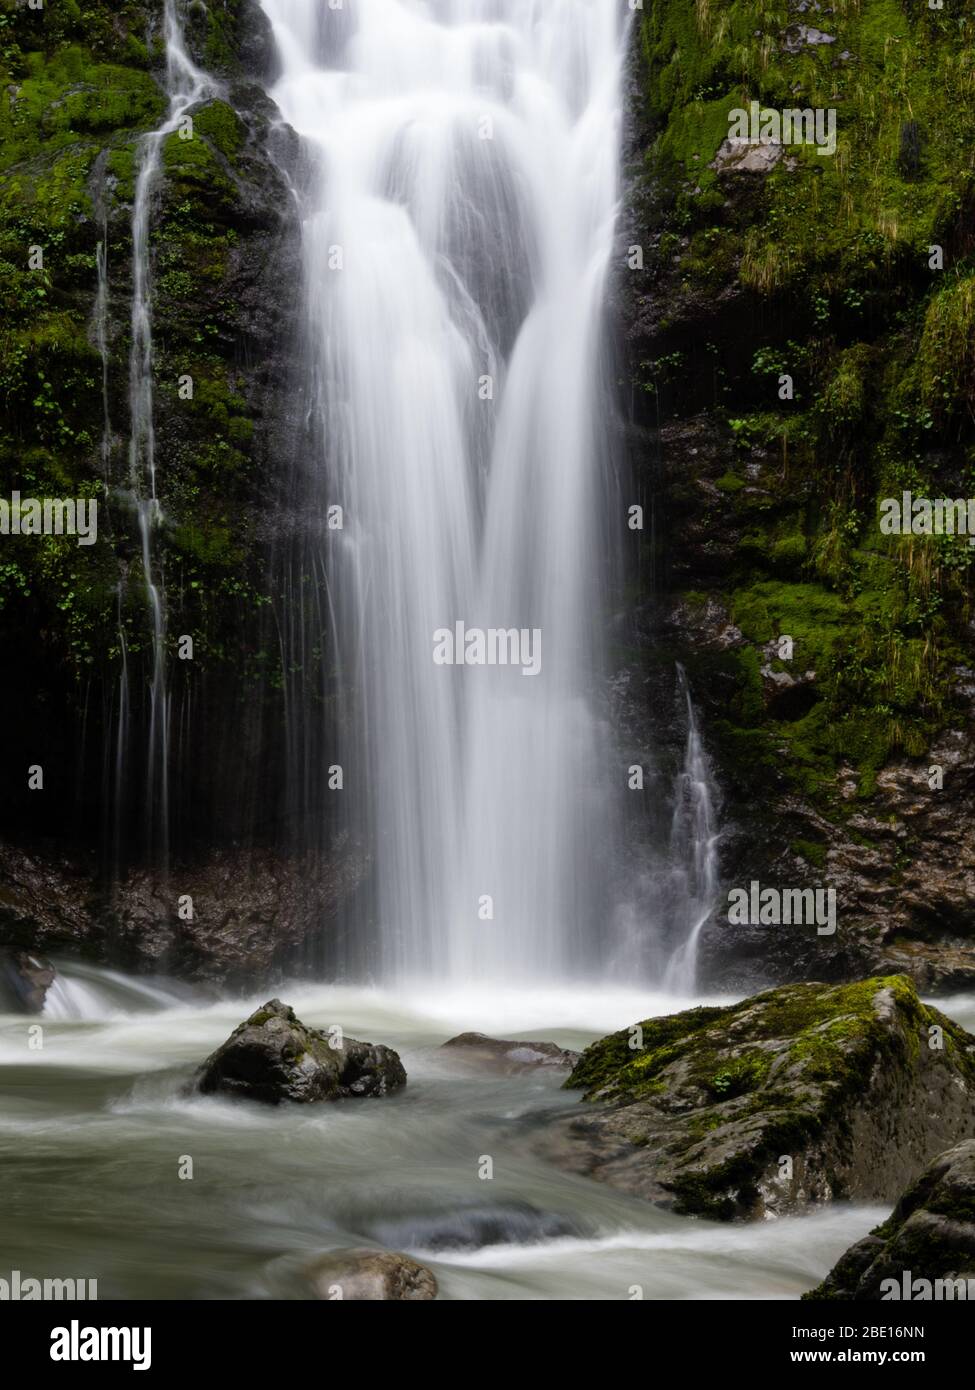 Chute d'eau dans la forêt de l'état de Washington, États-Unis Banque D'Images